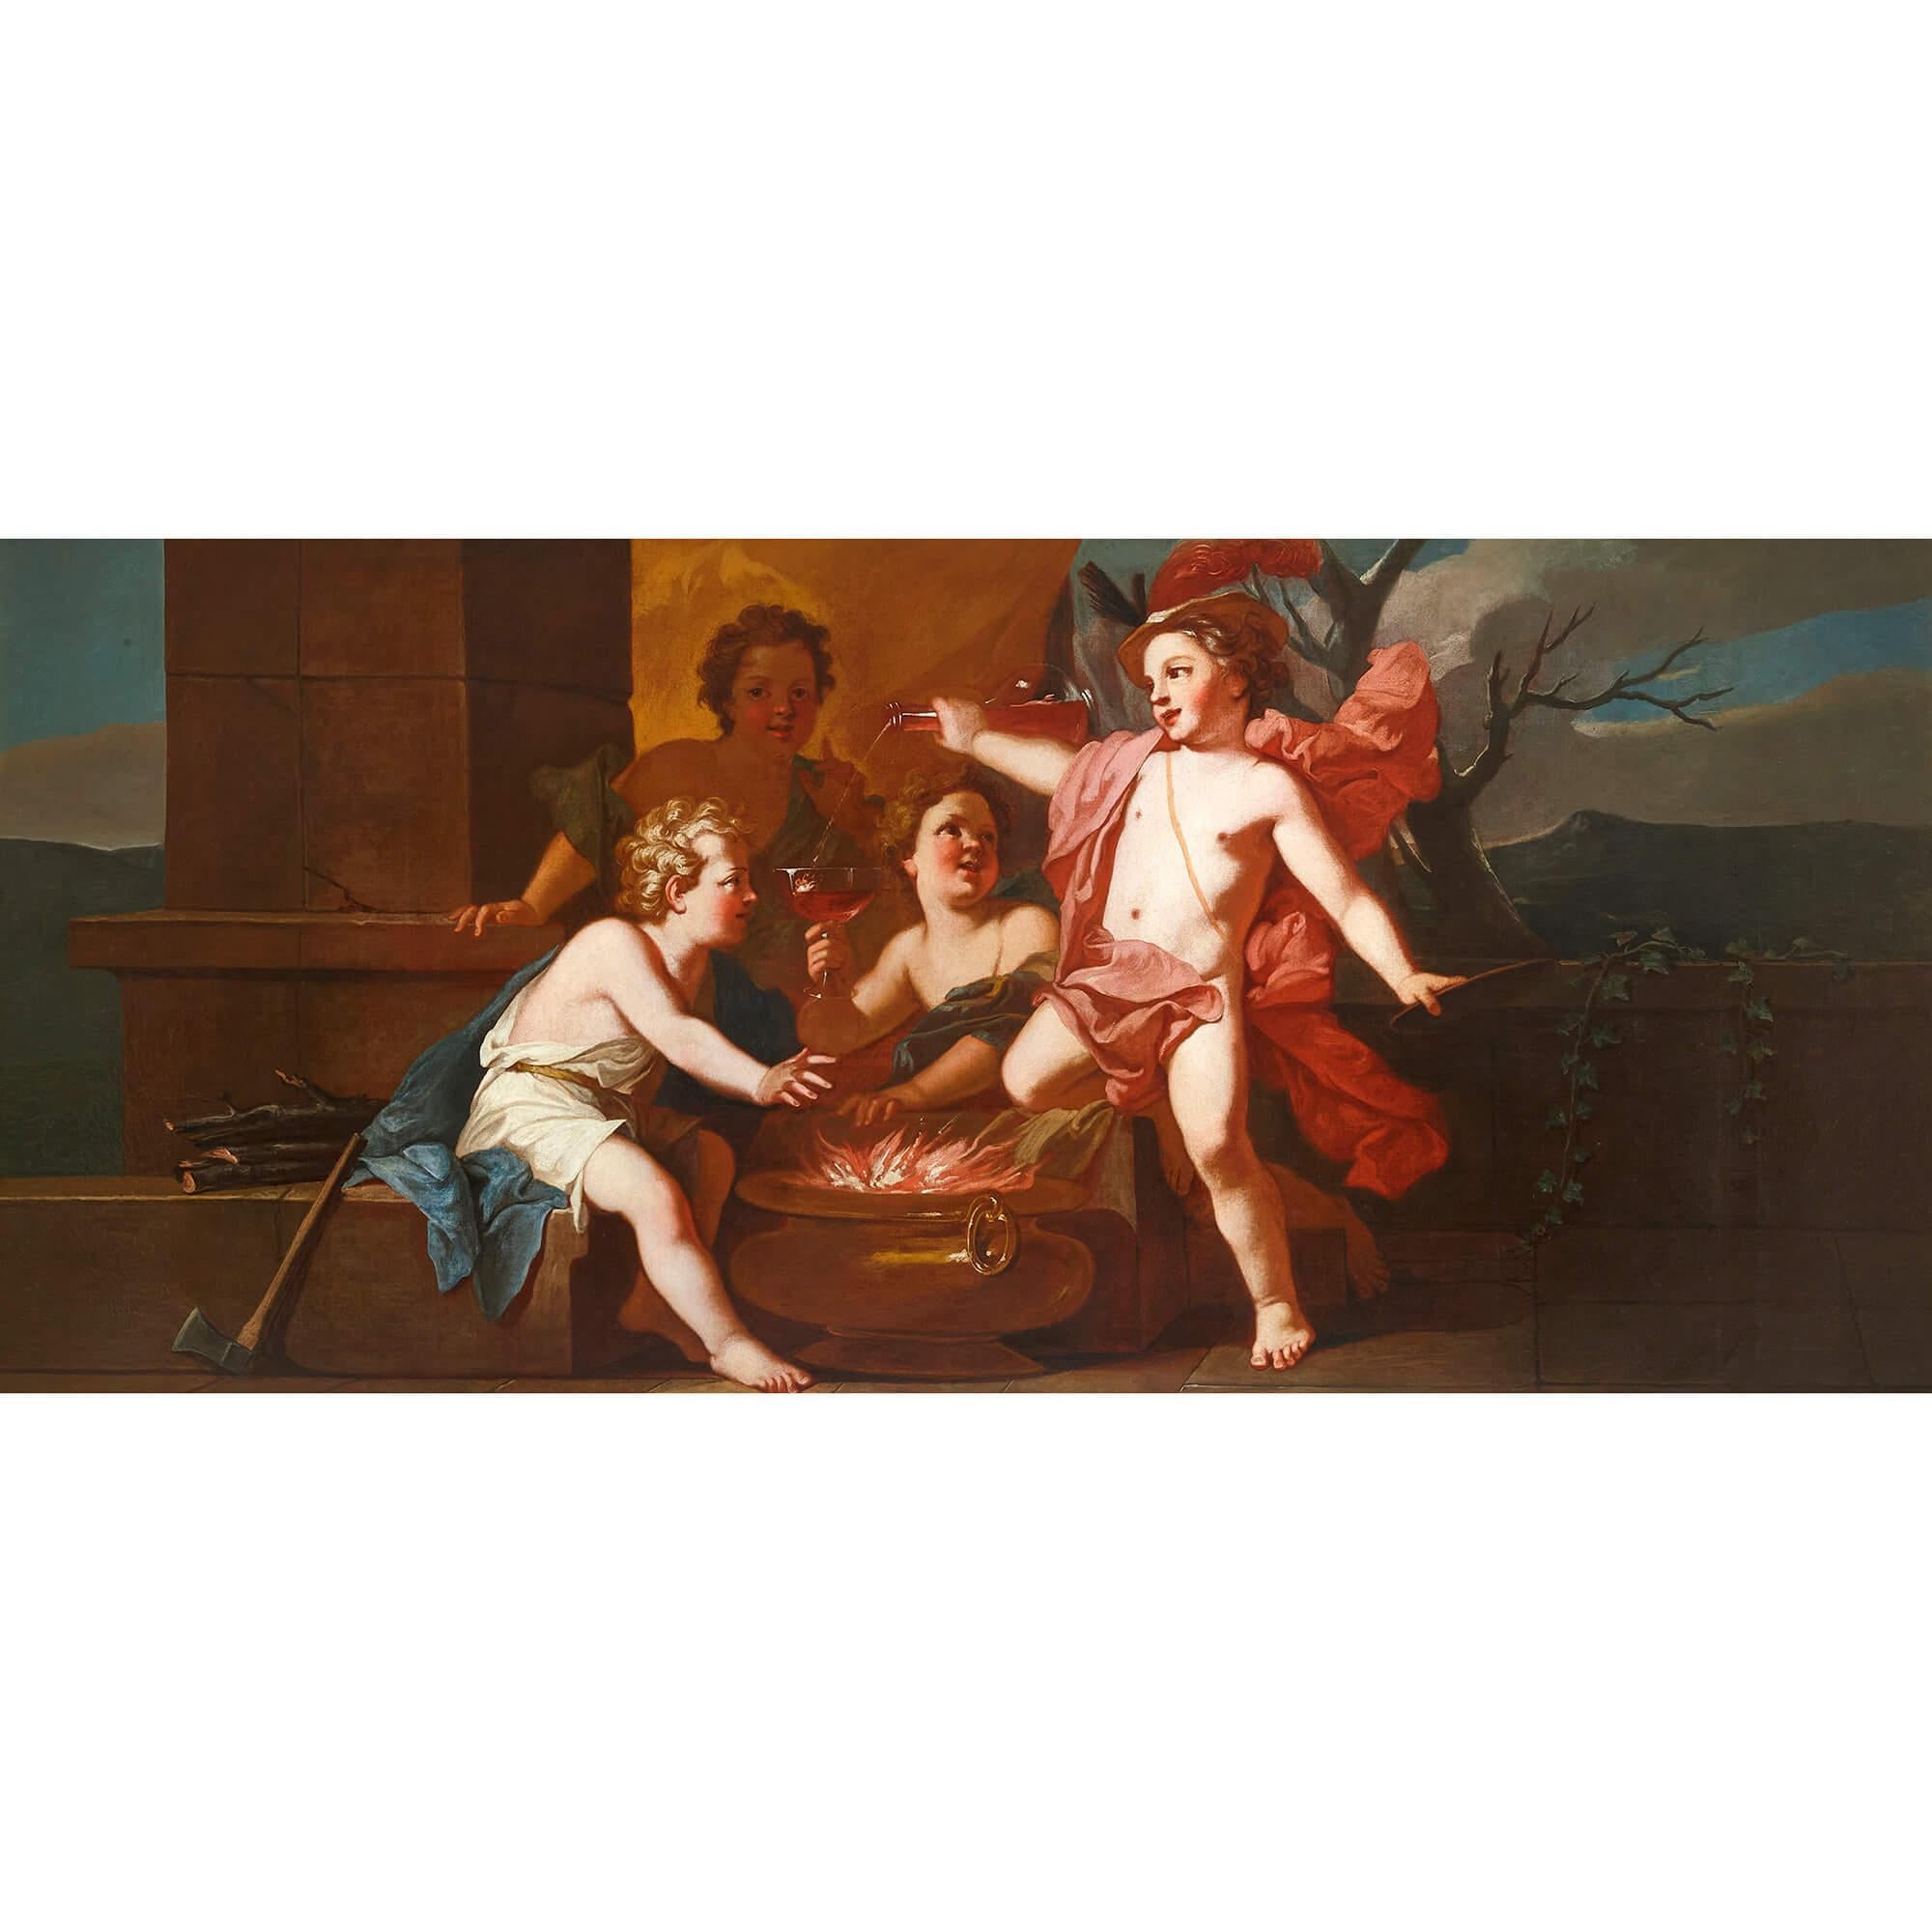 Ensemble de quatre grands tableaux rococo italiens du XVIIIe siècle représentant les Quatre Saisons.
Italien, 18ème siècle
Cadres : hauteur 98cm, largeur 201,5cm, profondeur 5cm
Toiles : hauteur 85cm, largeur 188cm, profondeur 2.5

Réalisées par un